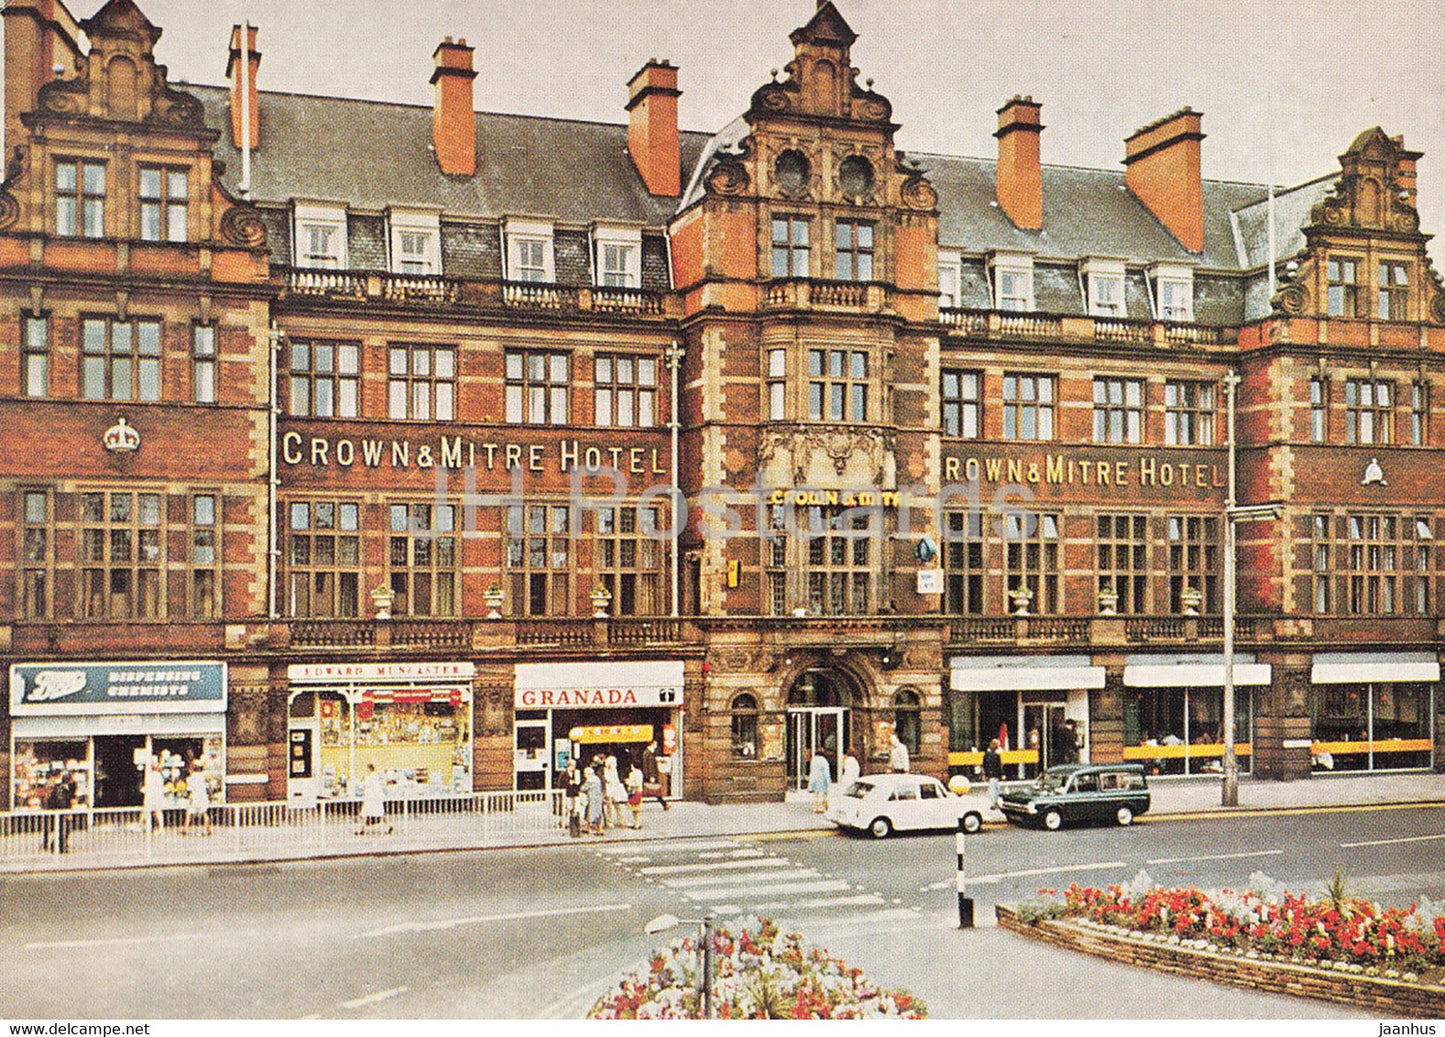 Crown & Mitre Hotel - Carlisle - Cumberland - England - United Kingdom - unused - JH Postcards